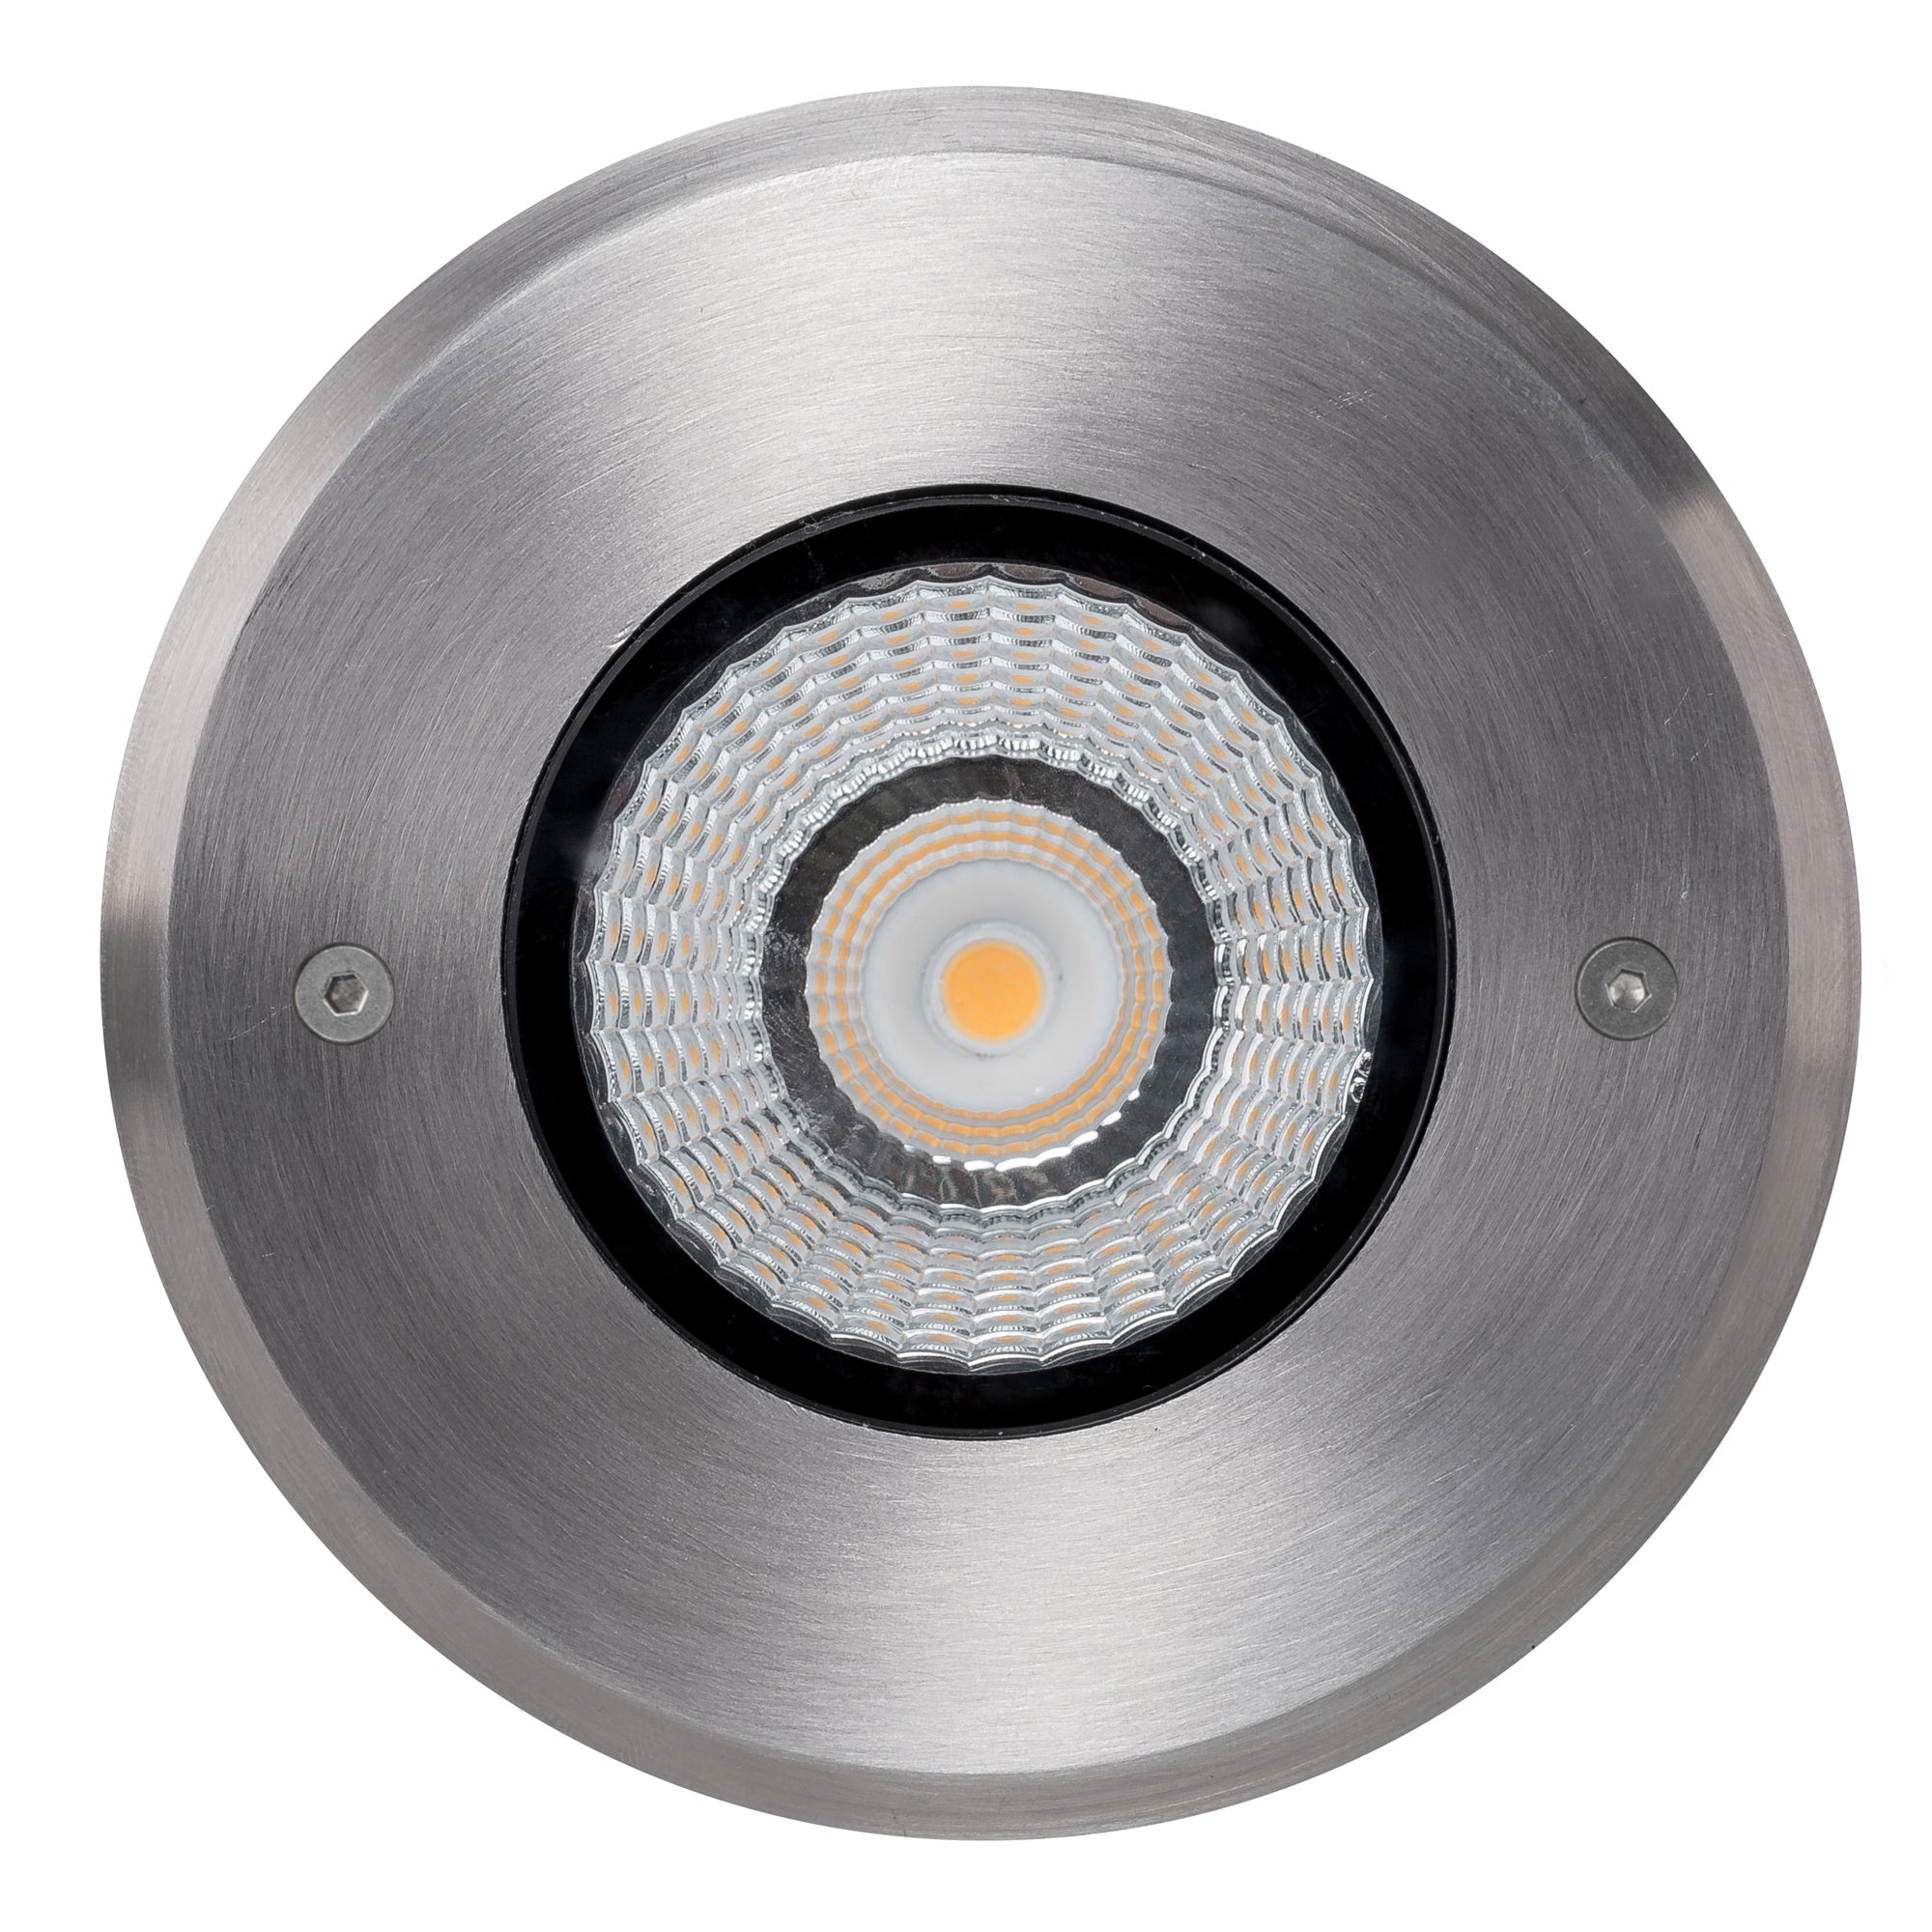 HV1831 - Klip 316 Stainless Steel 7w LED Inground Light